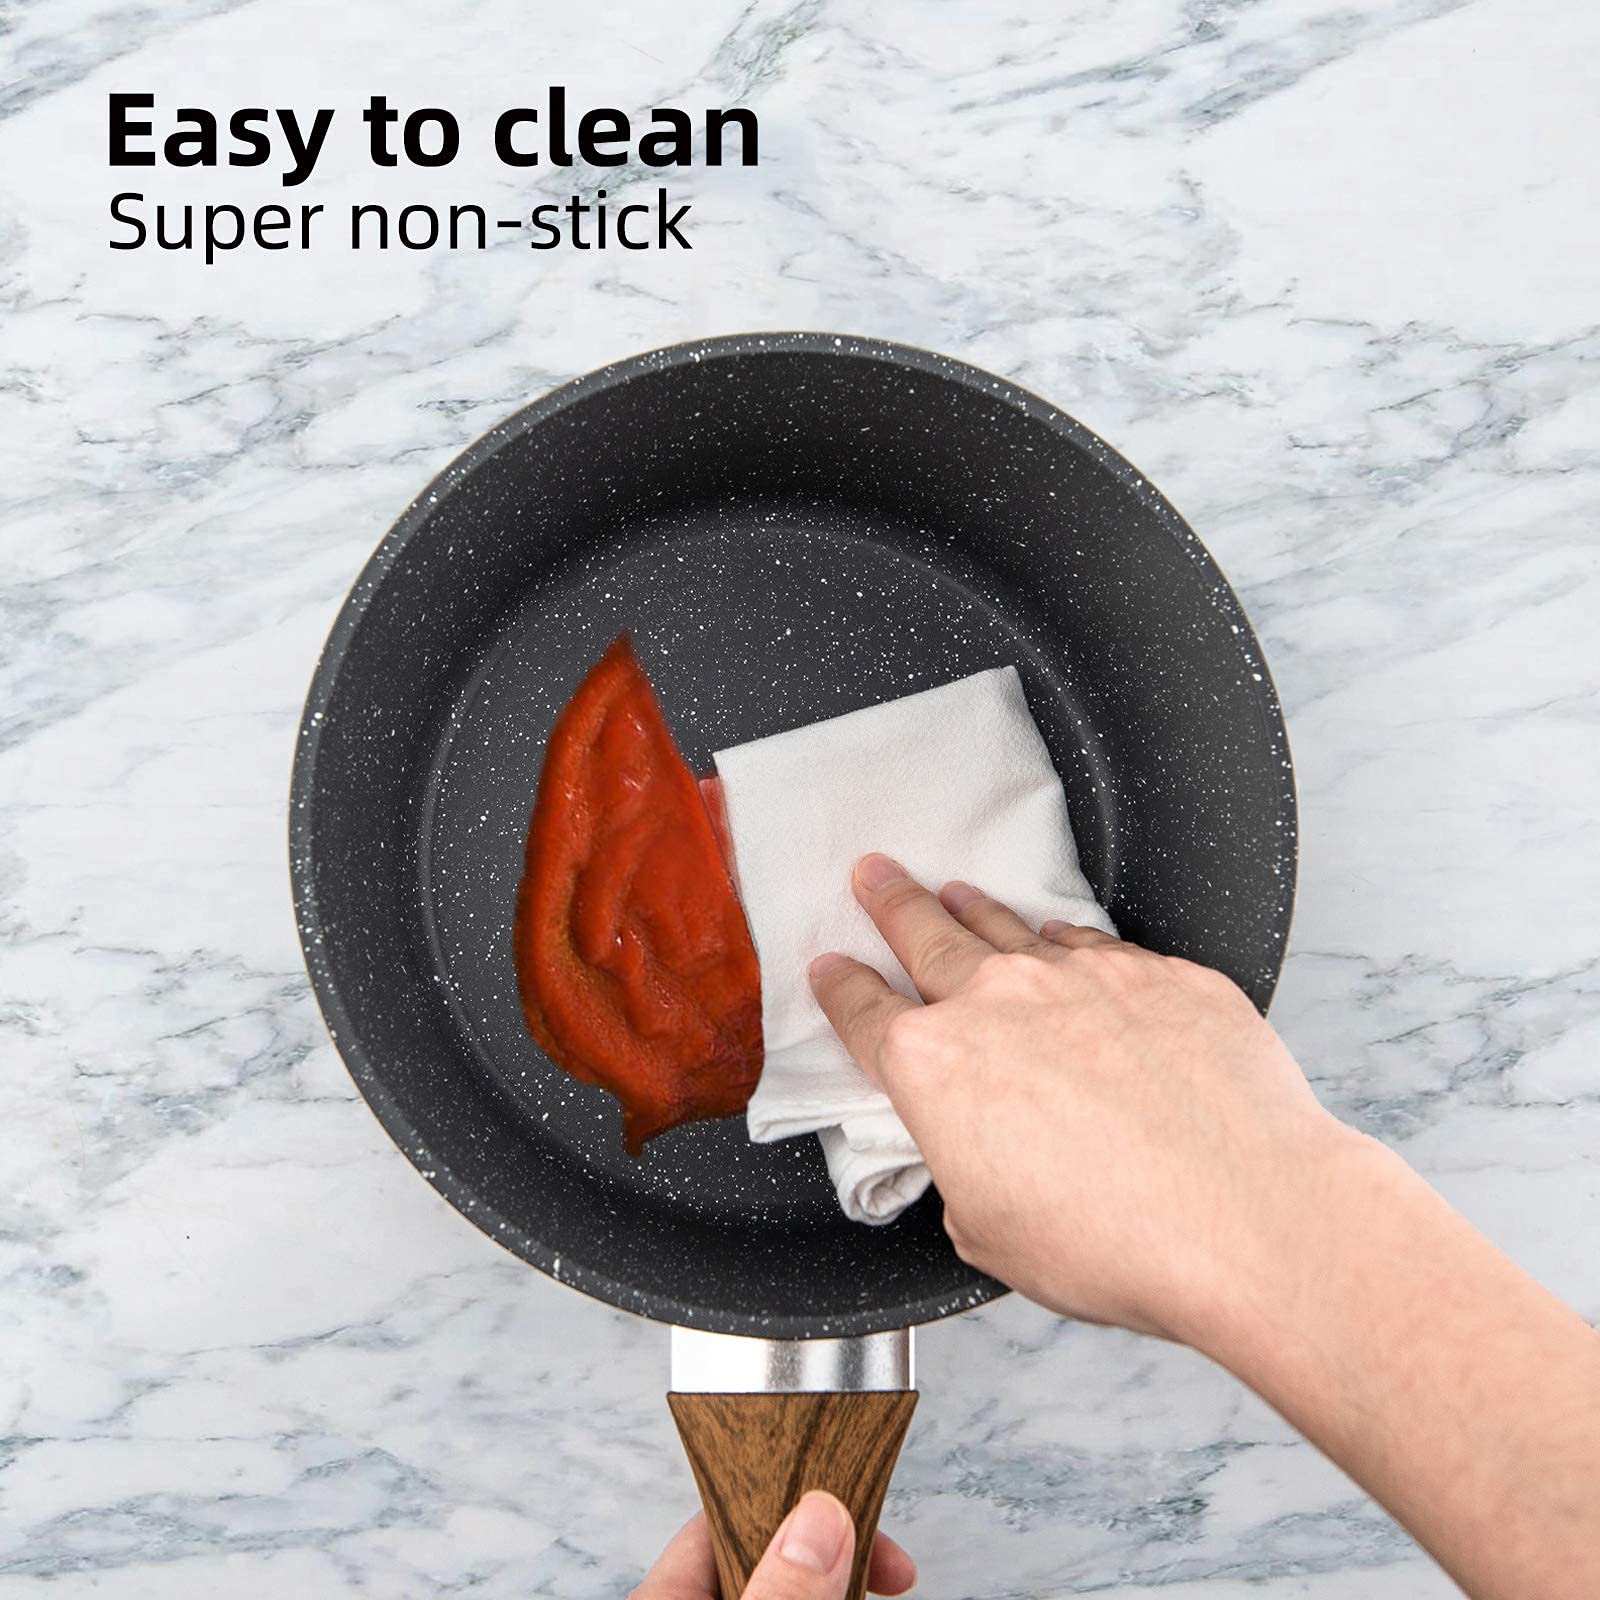 Nonstick 3-Piece Cookware Set with Frying Pan, Saucepan, and Woks, Heat-Resistant Design with Ergonomic Wood-Effect Bakelite Handles, PFOA-Free - Luxitt